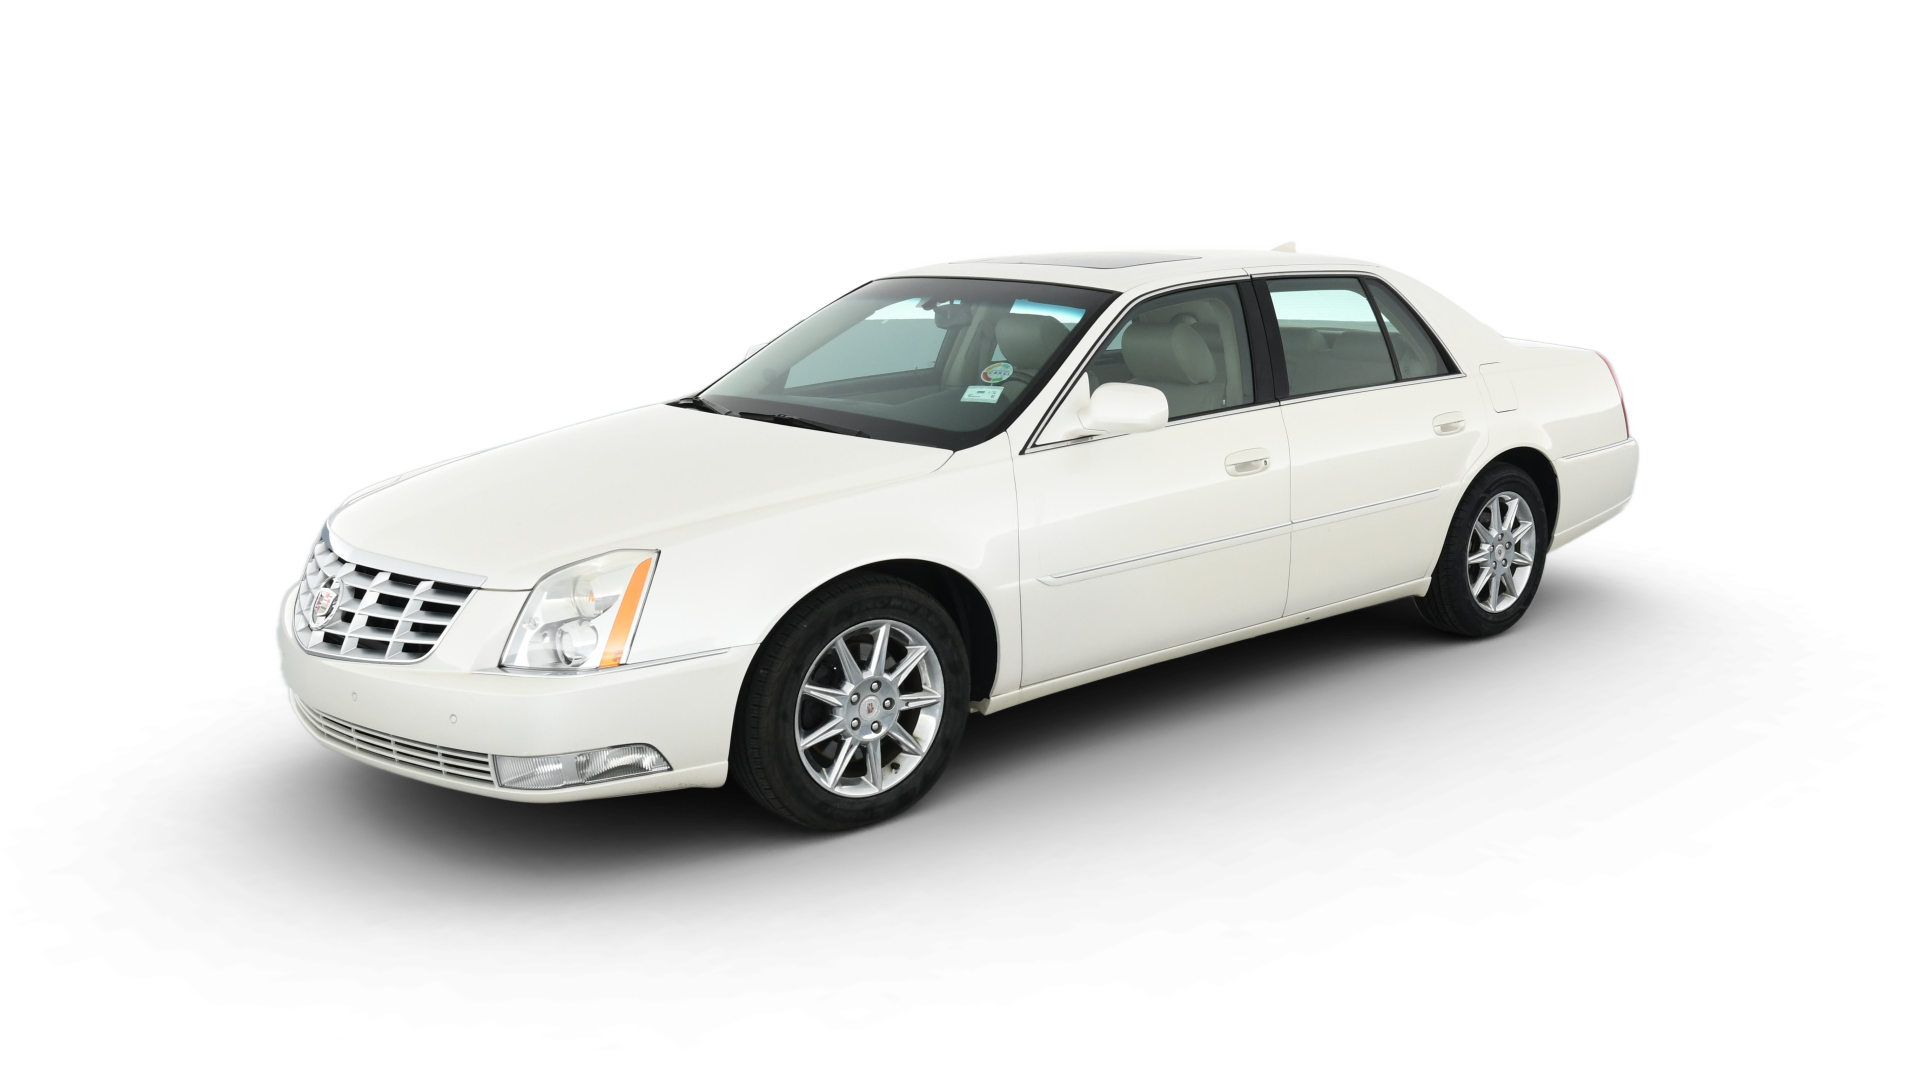 Cadillac DTS model image.